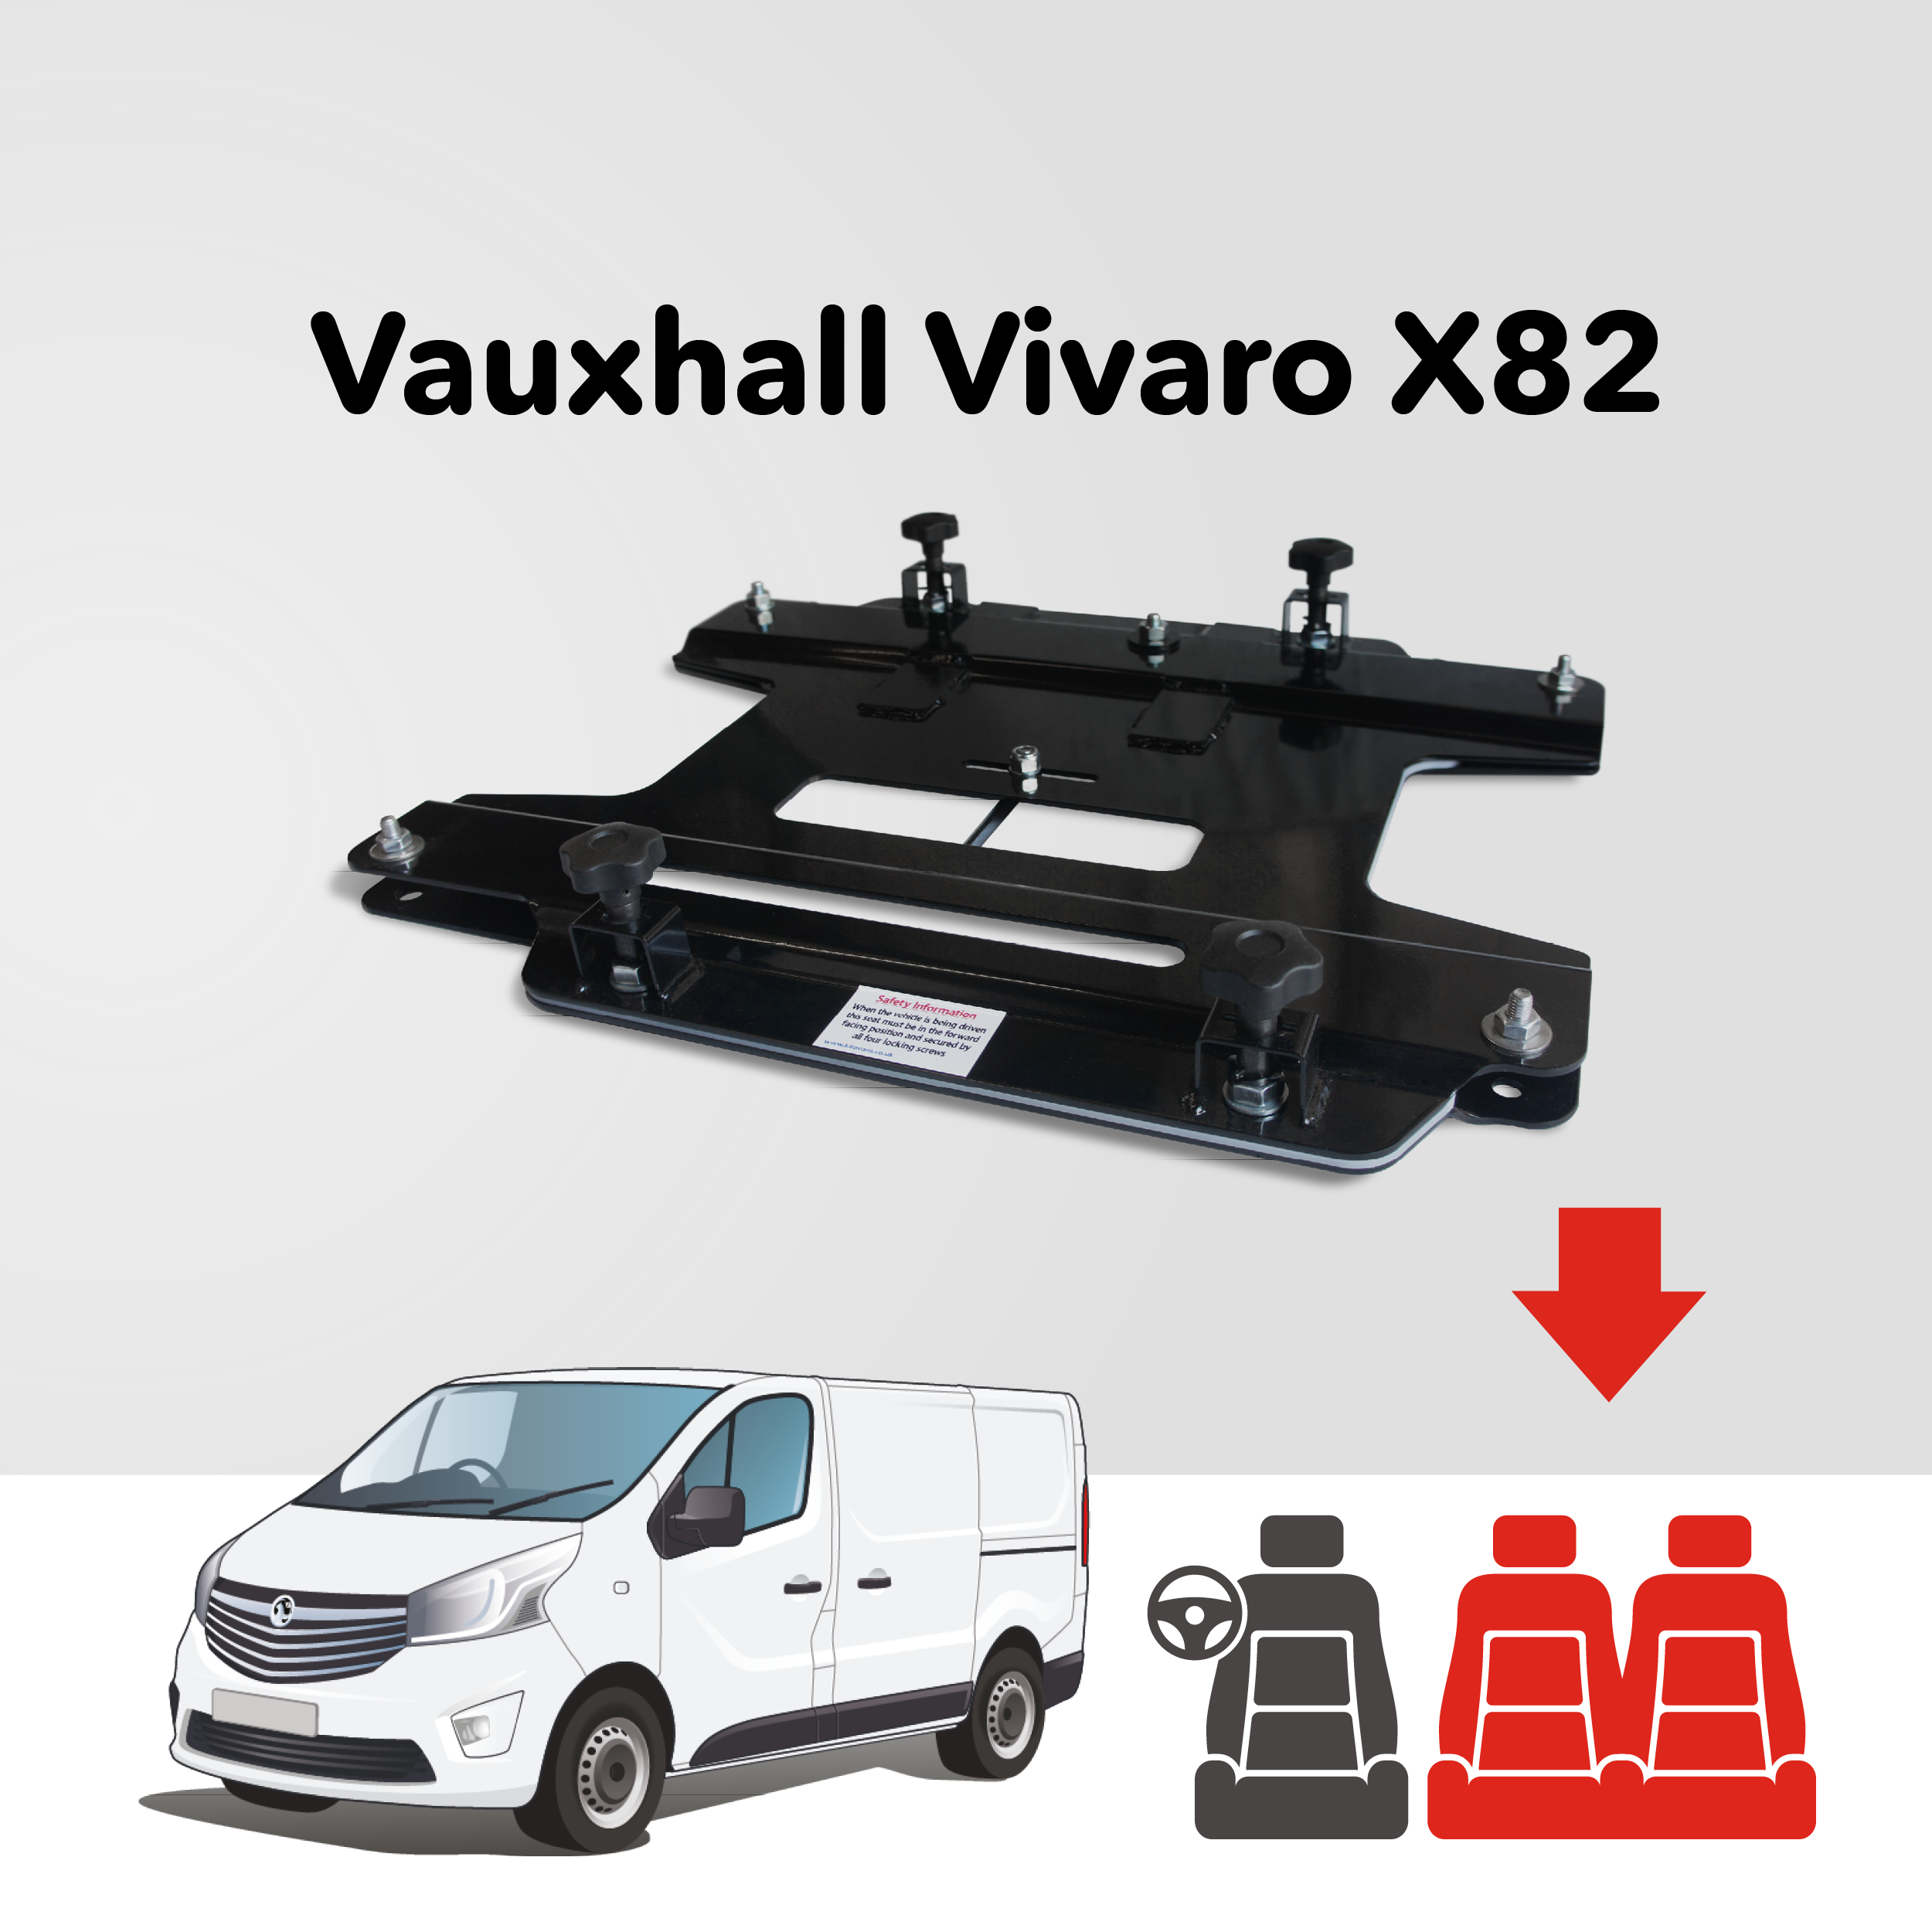 Base tournante double banquette Kiravans - Opel Vivaro 2014-2018 Mk2 (UK & IRL - CONDUITE À DROITE)